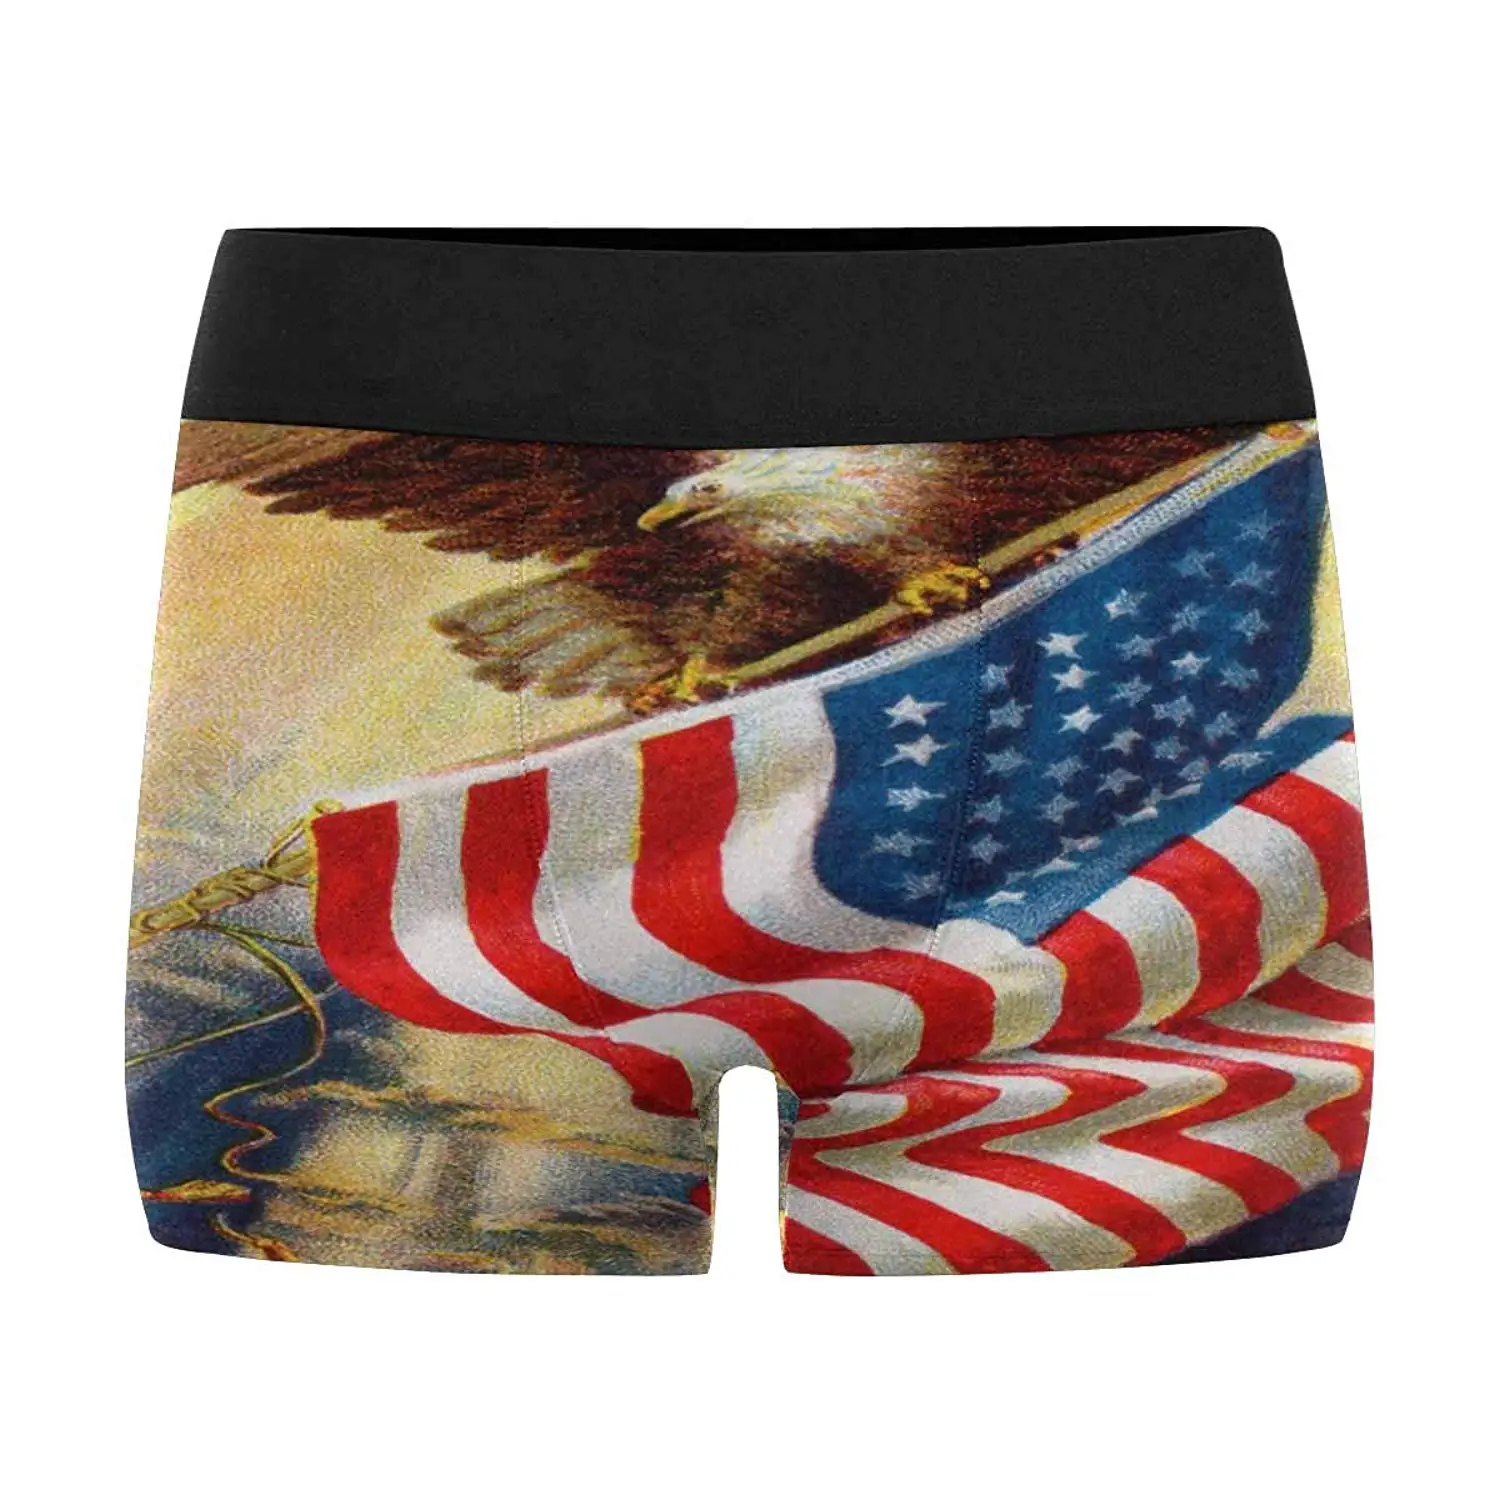 XS-3XL INTERESTPRINT Mens Boxer Briefs Underwear Celebrating American ...